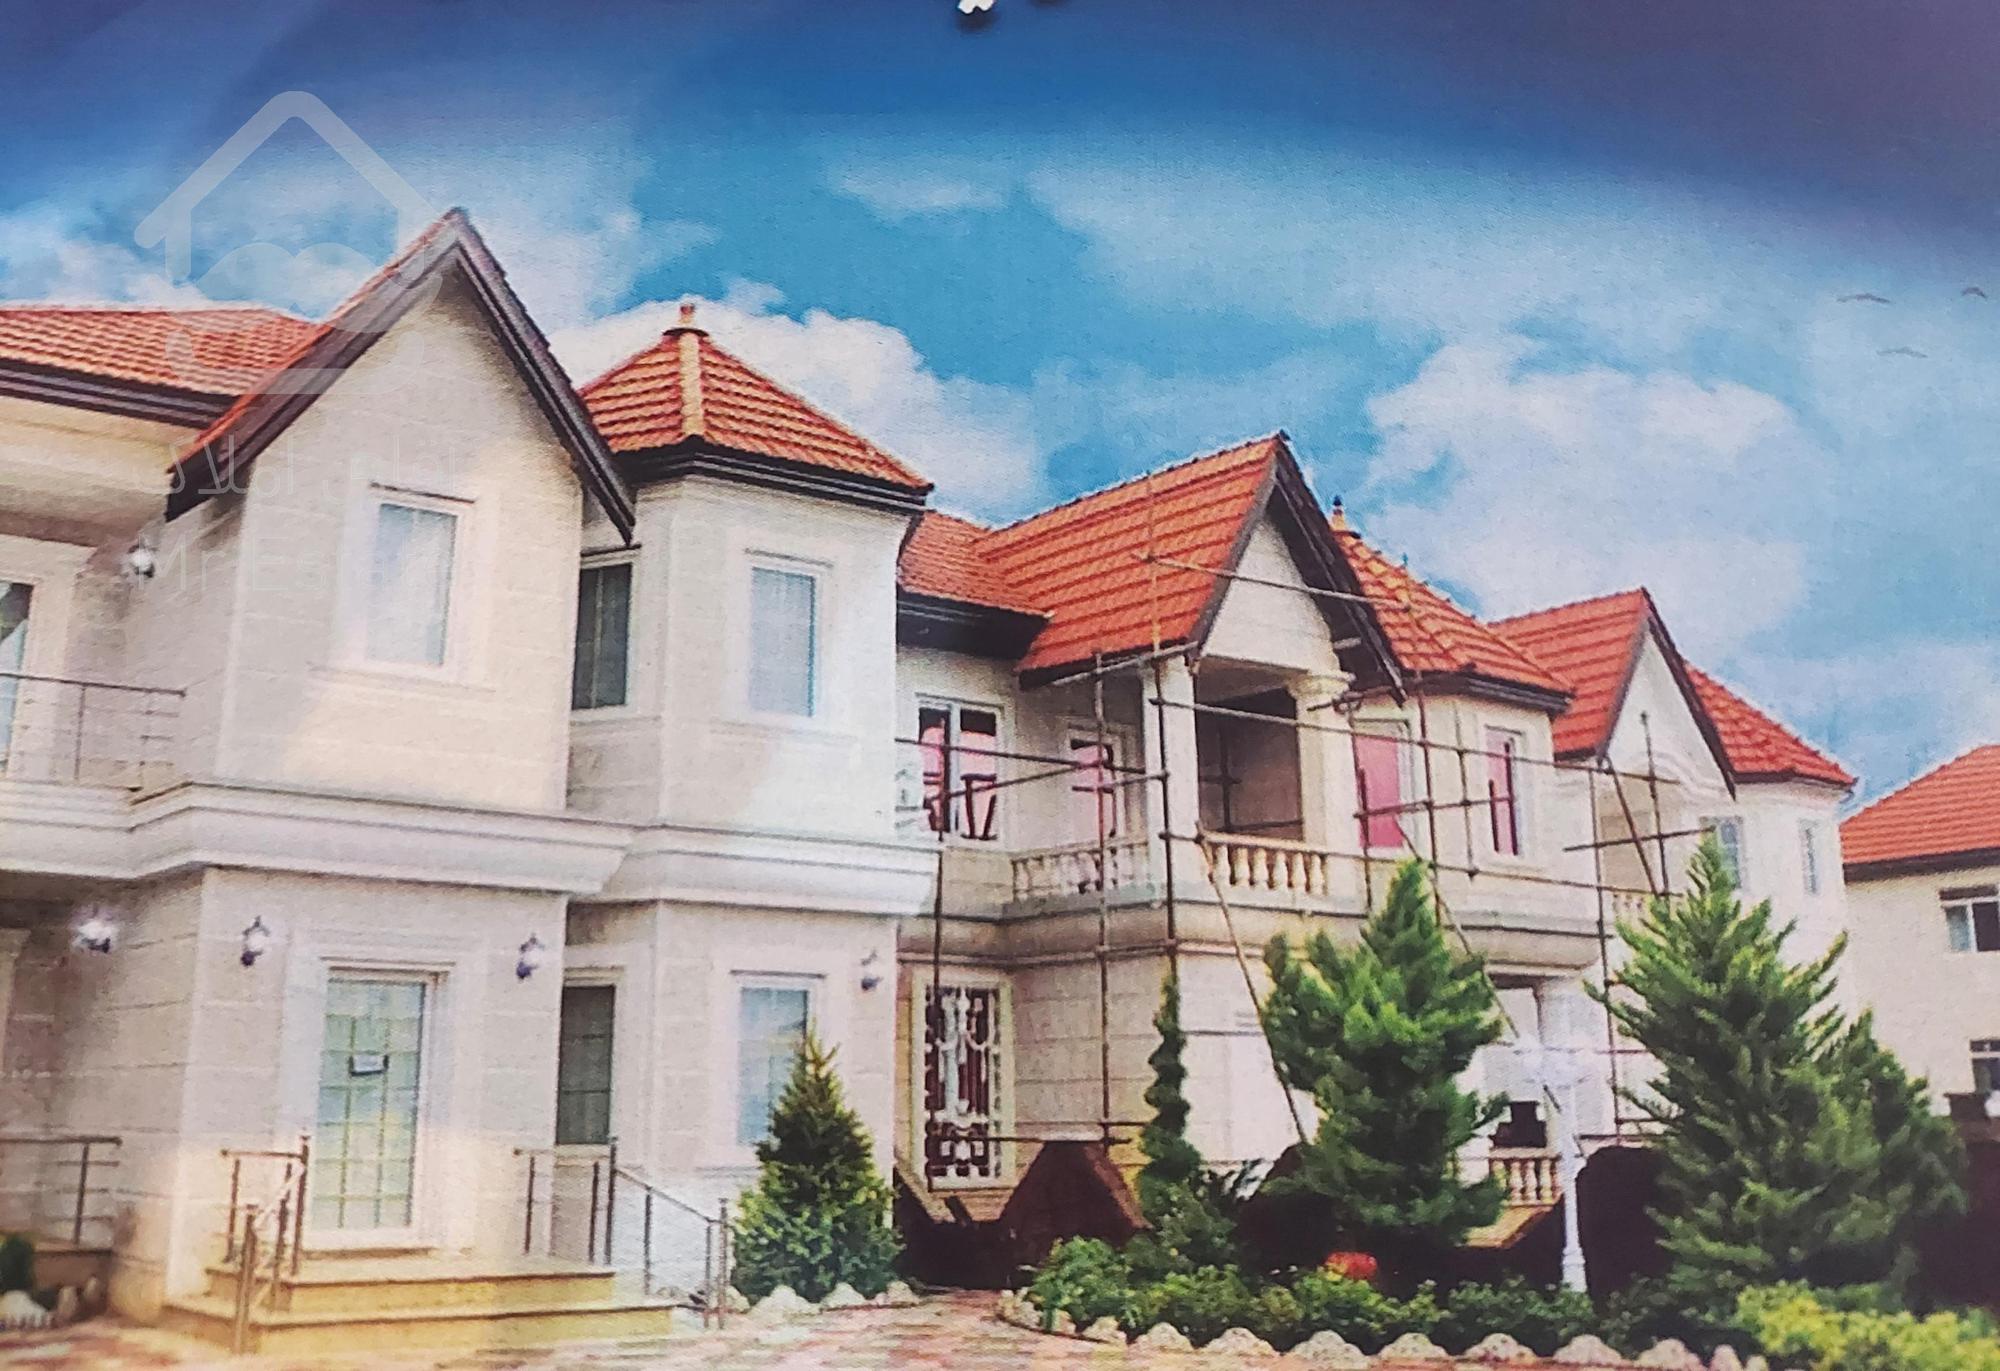 شهرک شهرک ساحلی ققنوس دارای ۱۵۱ قطعه ویلا دارای سند مالکیت و کاربری مسکونی